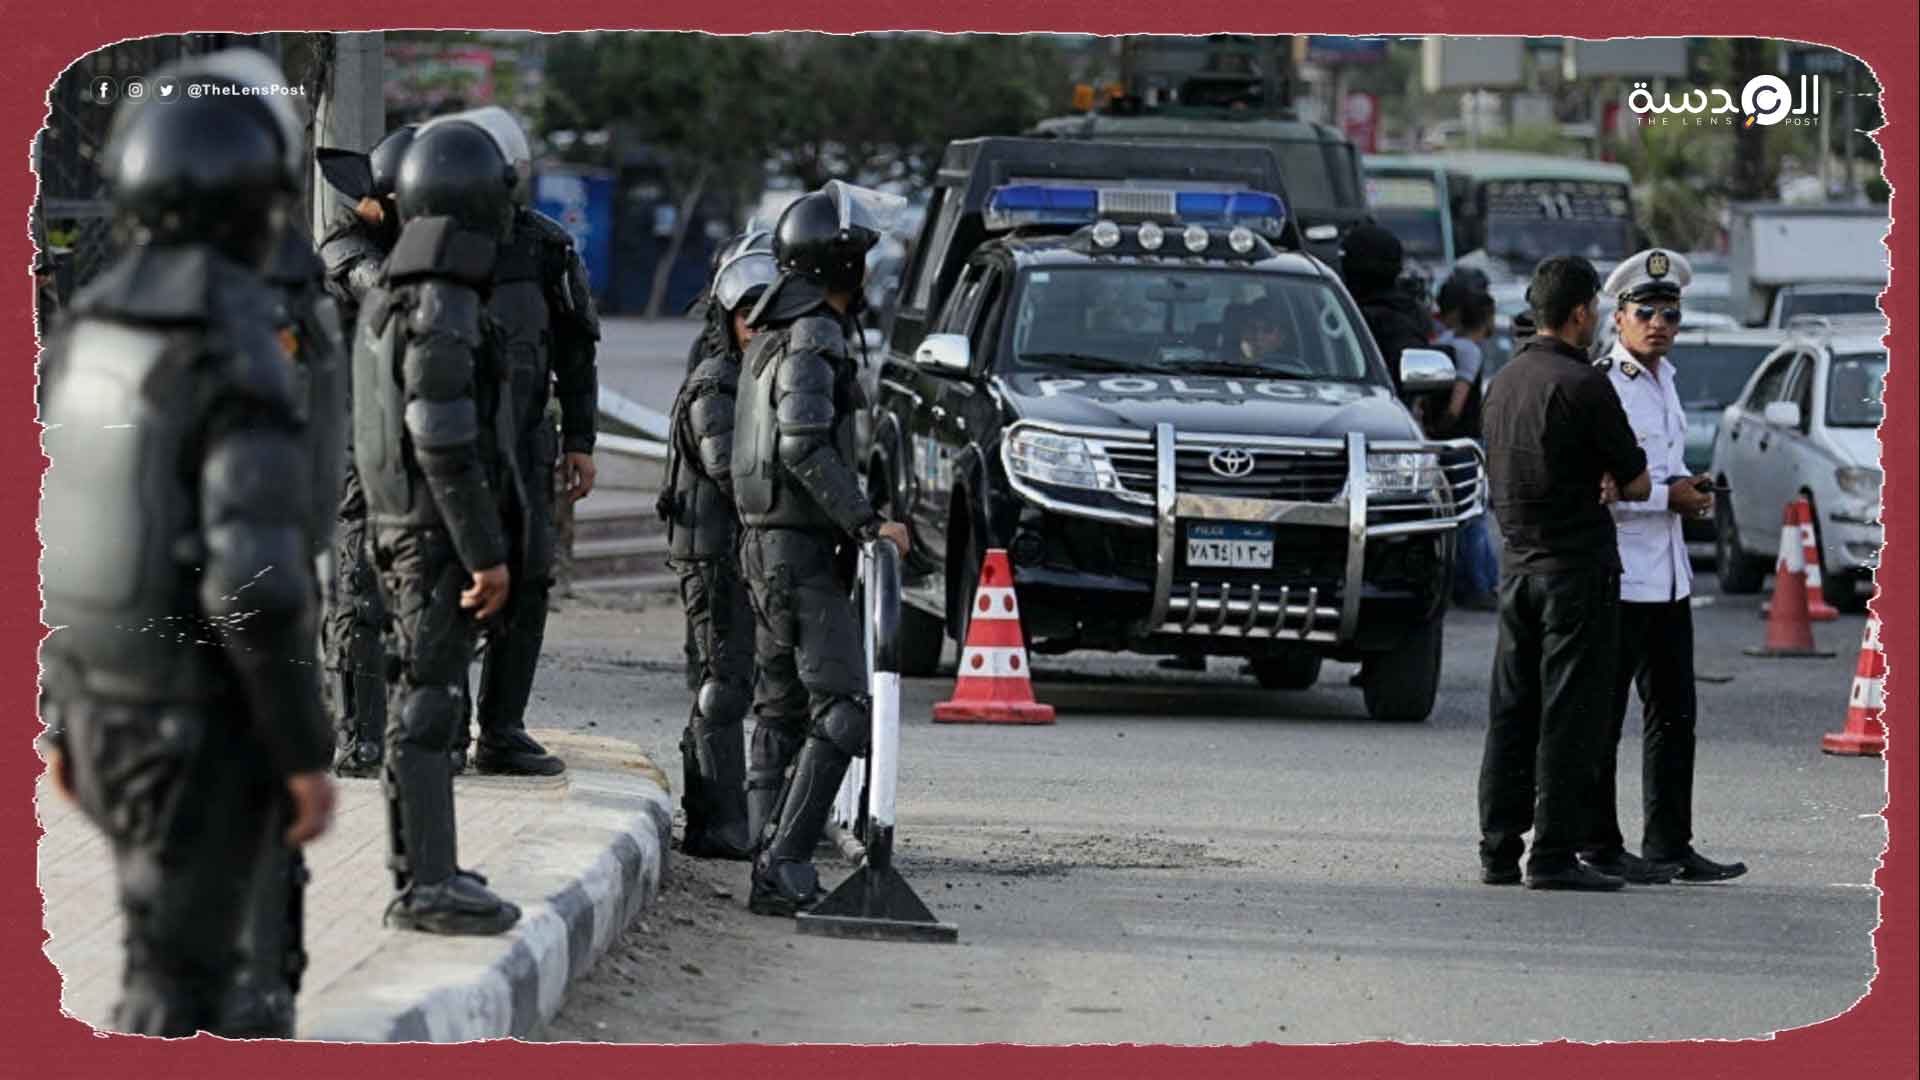 الأمن المصري يفرض قبضته بشوارع مصر بالتزامن مع فعاليات بدول أخرى